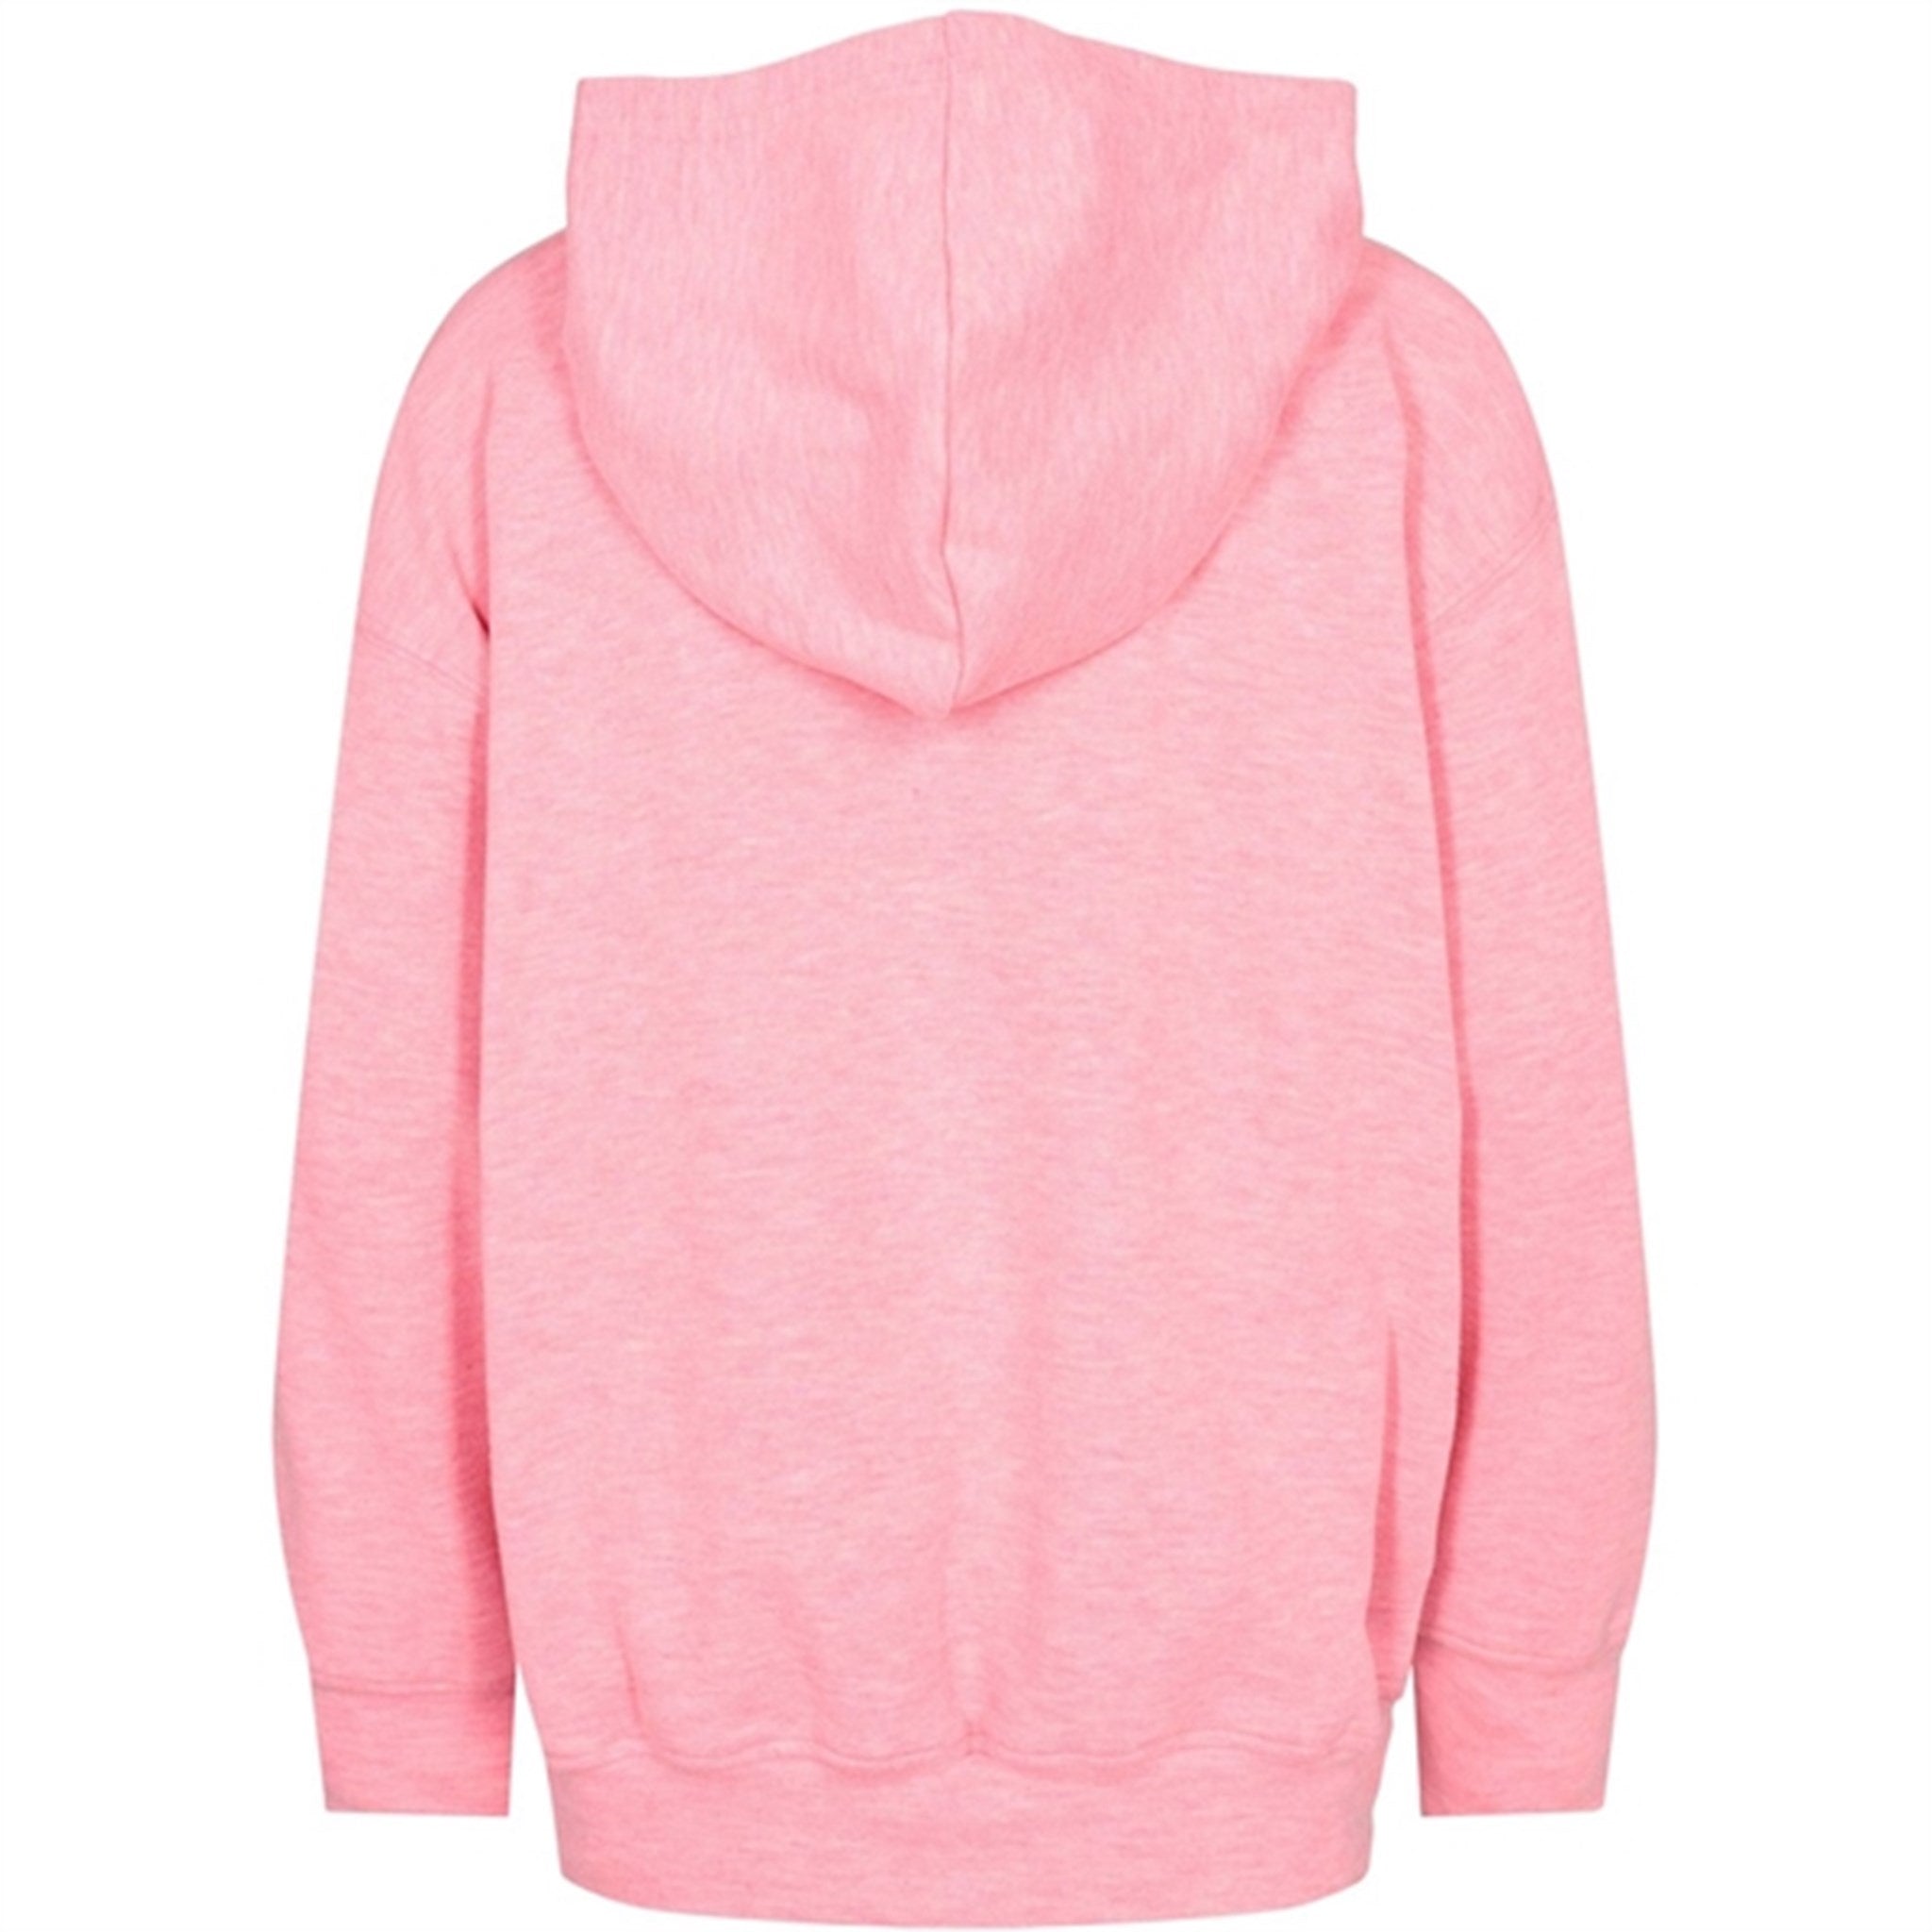 Sofie Schnoor Young Light Pink Sweatshirt 3